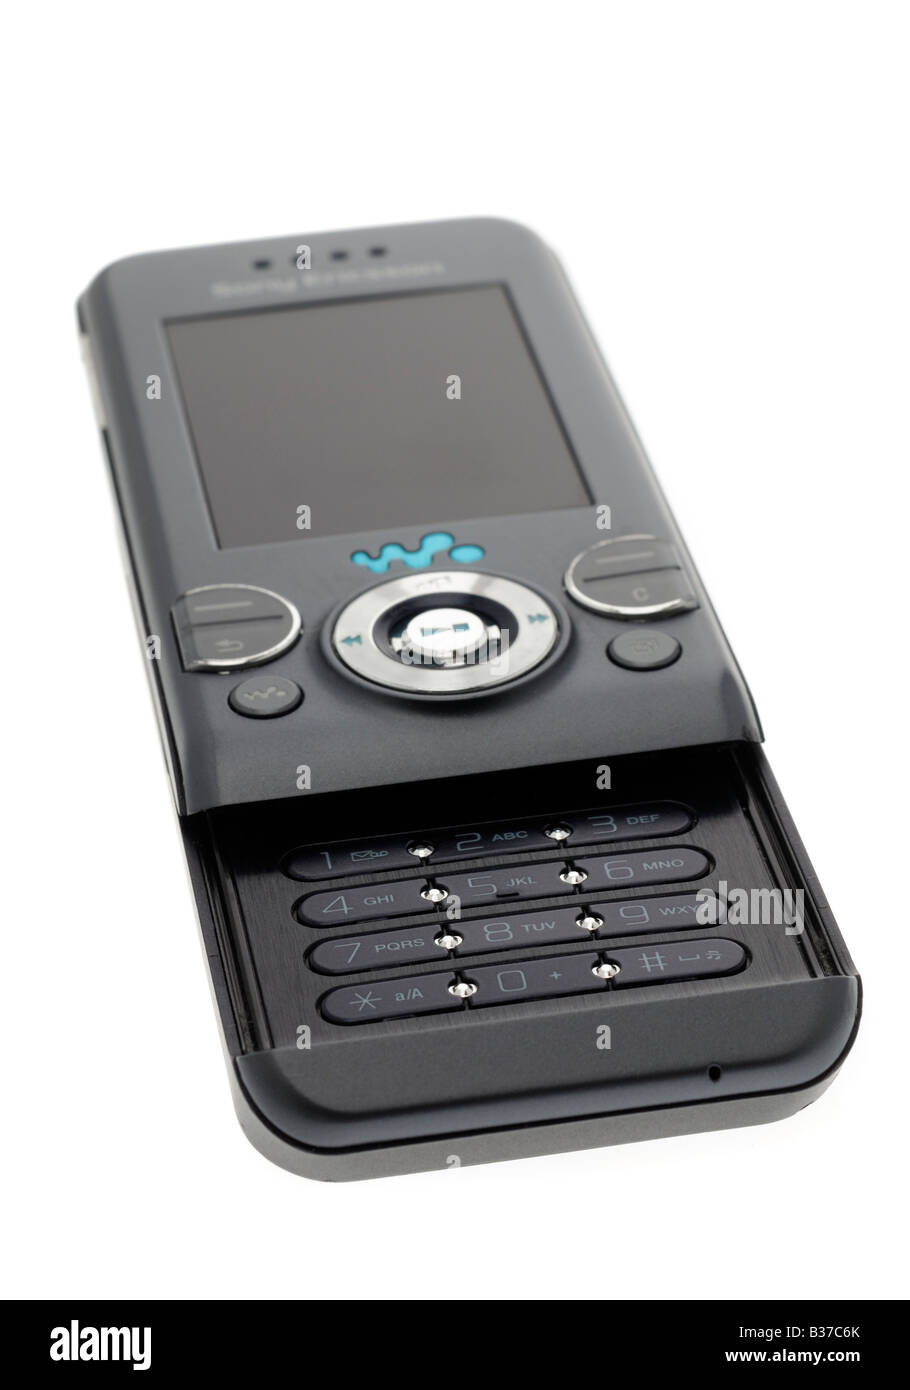 Sony Ericsson Mobile Phone Stock Photo - Alamy